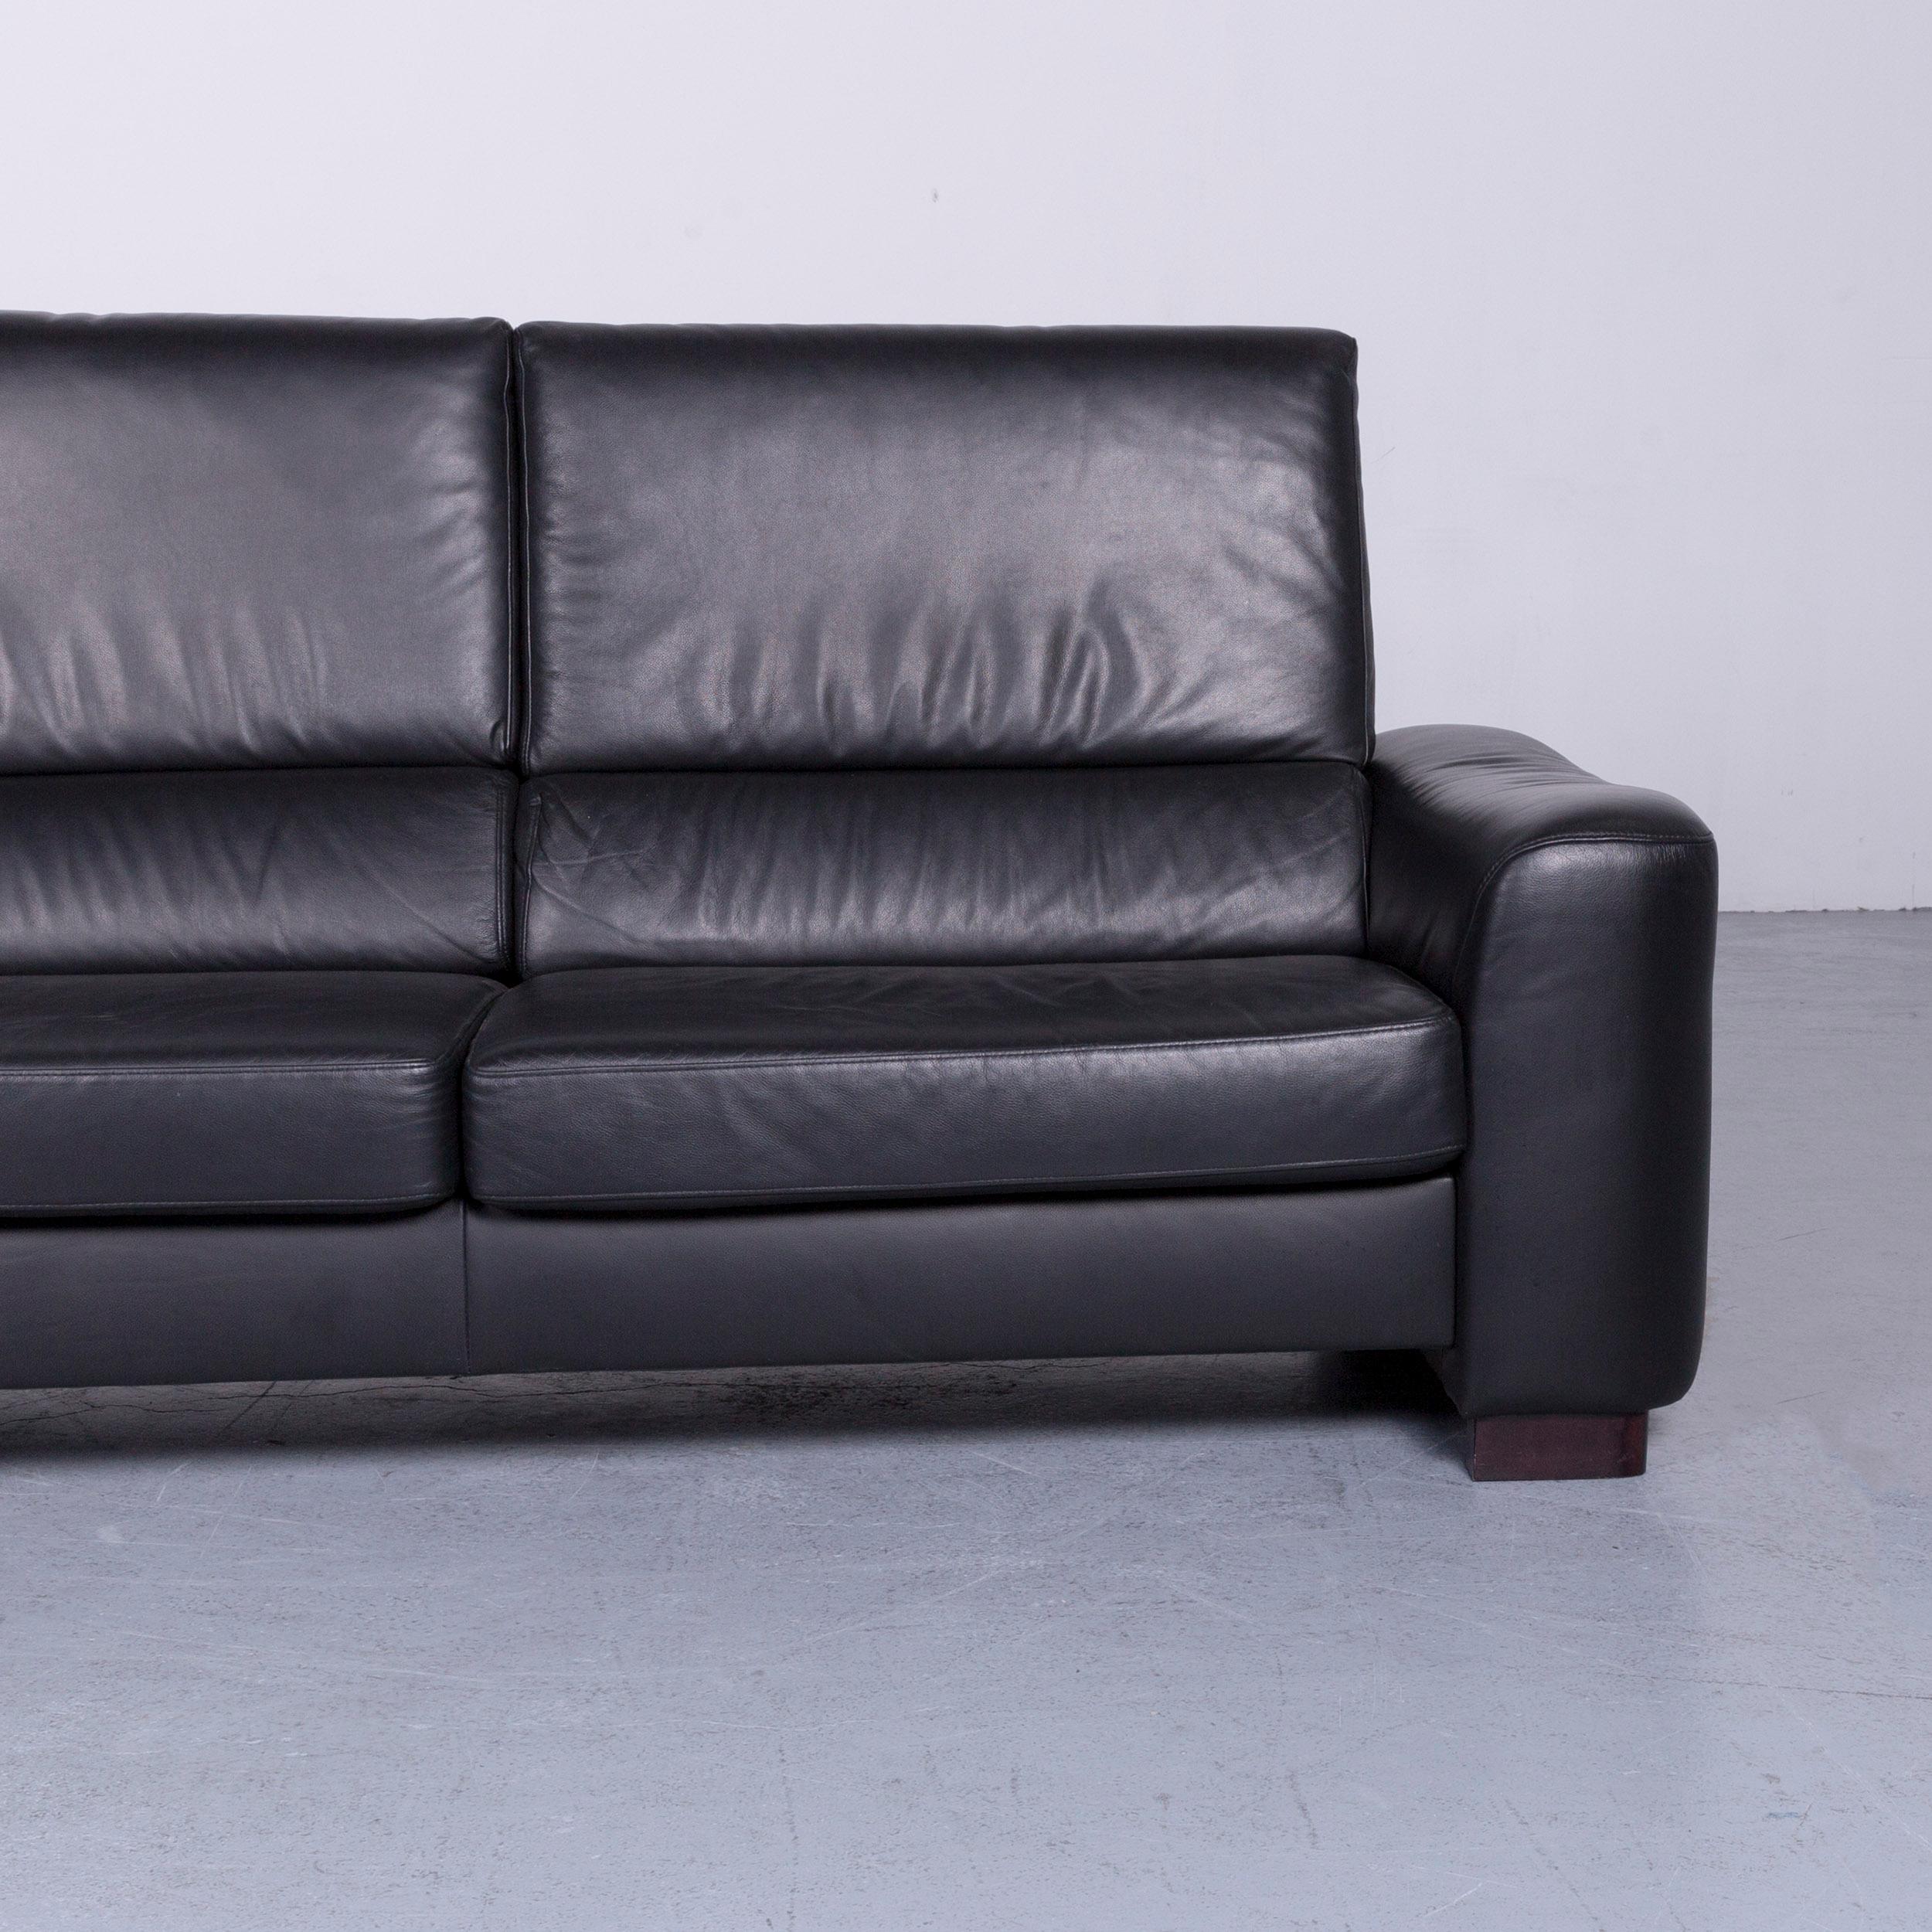 German Ewald Schillig Designer Sofa Leather Black Three-Seat Couch Modern